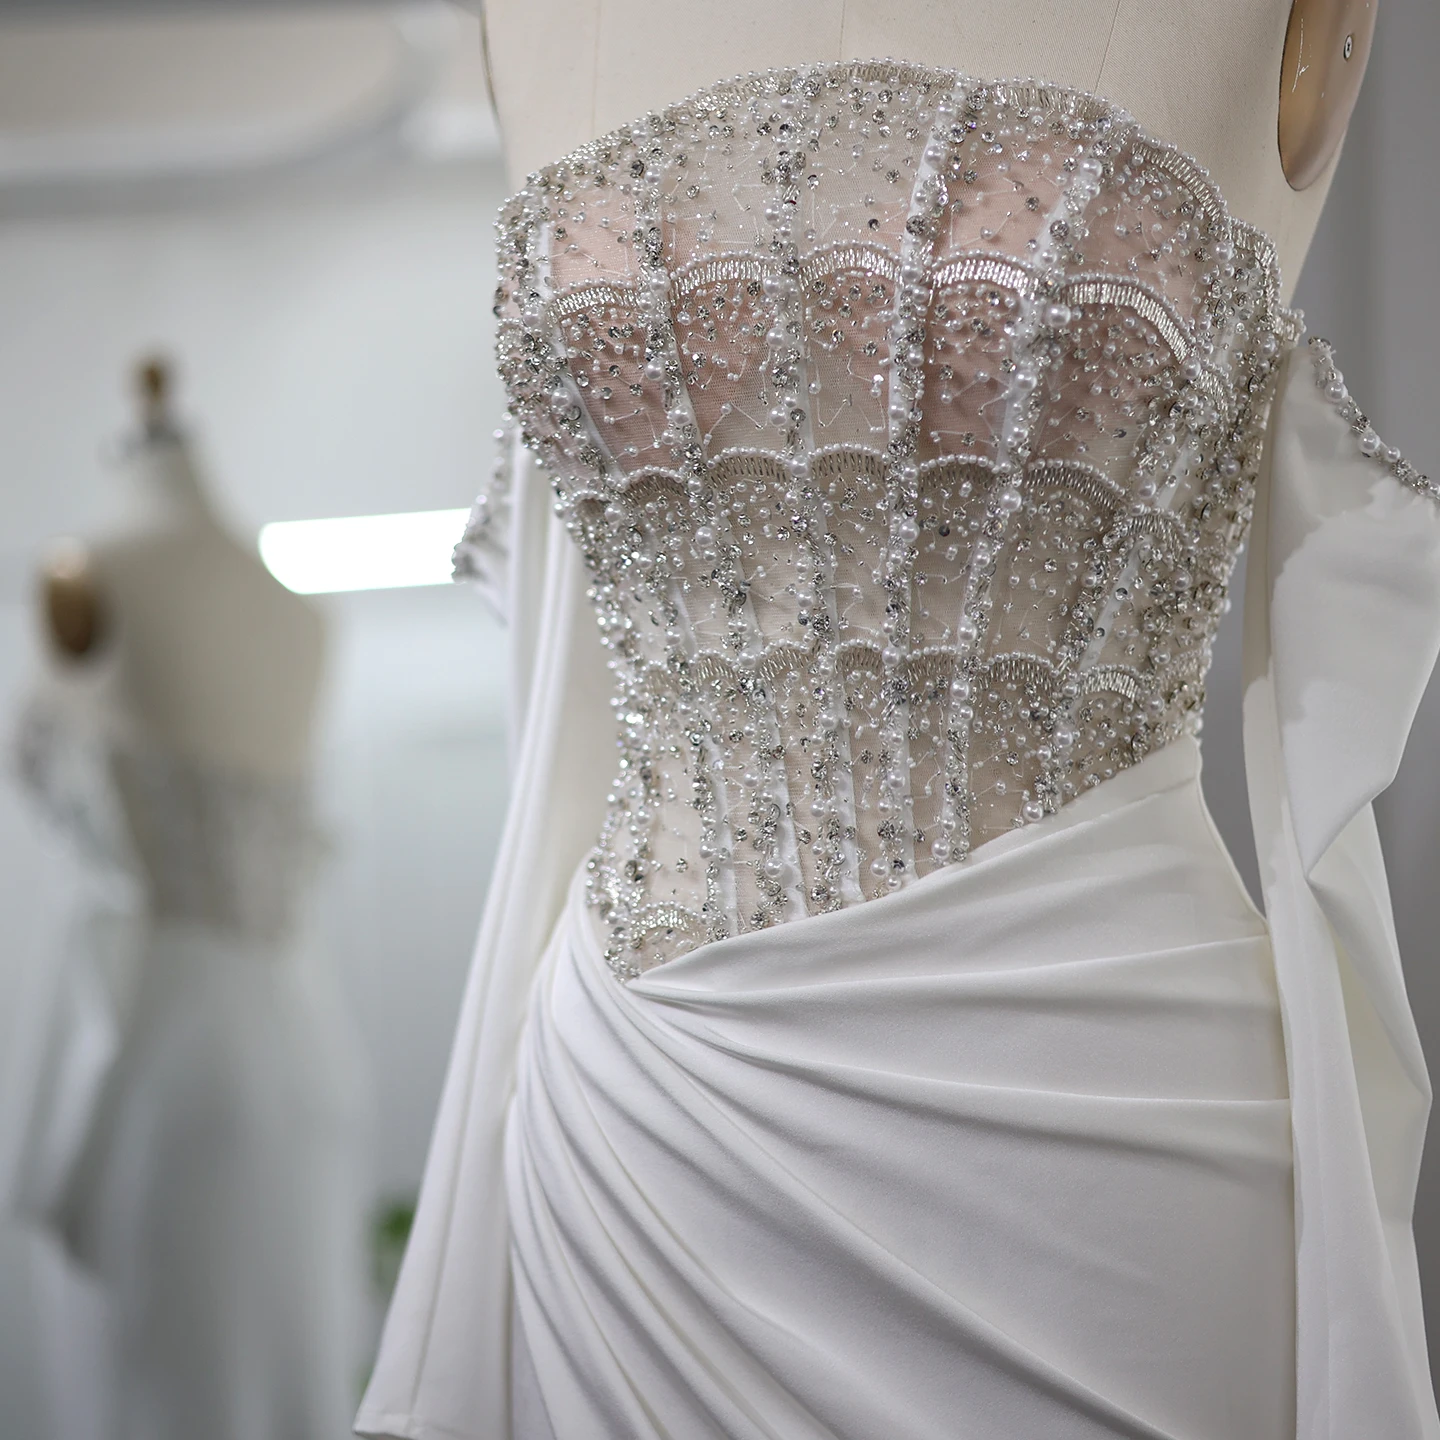 Sharon powiedziała luksusowa syrena Dubai Biała sukienka wieczorna Seksowna zapieknięta wysoka szczelinowa eleganckie sukienki imprezowe dla kobiet